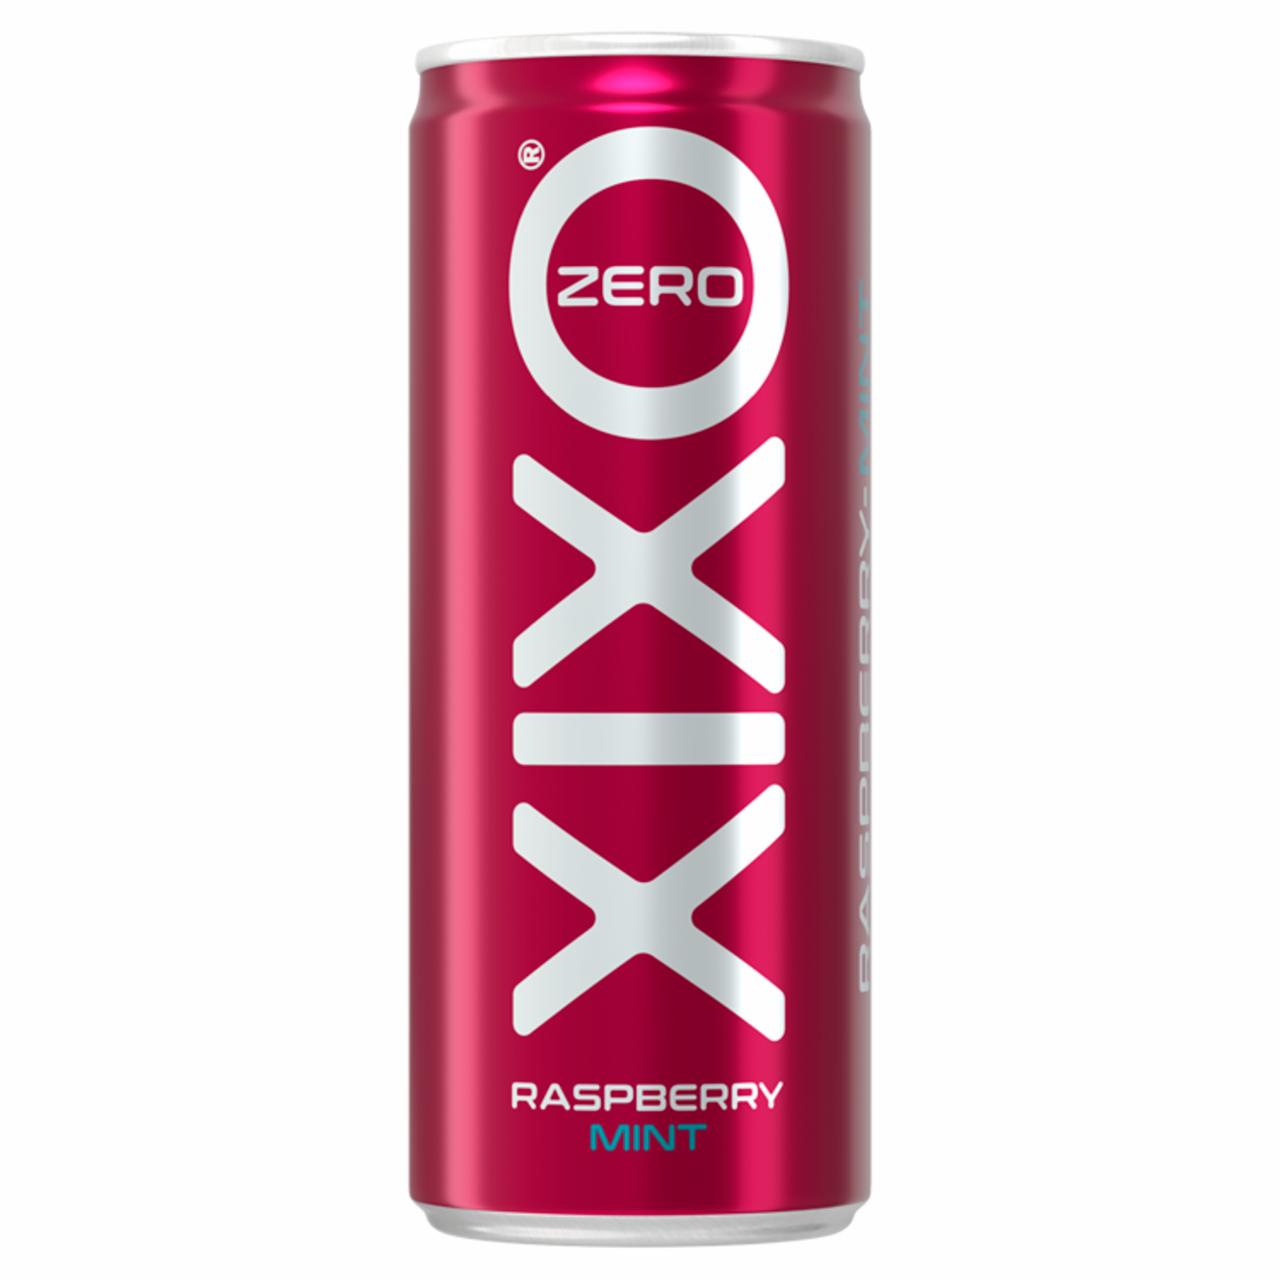 Képek - XIXO Raspberry-Mint Zero málna és menta ízű, cukormentes, szénsavas üdítőital édesítőszerrel 250 ml